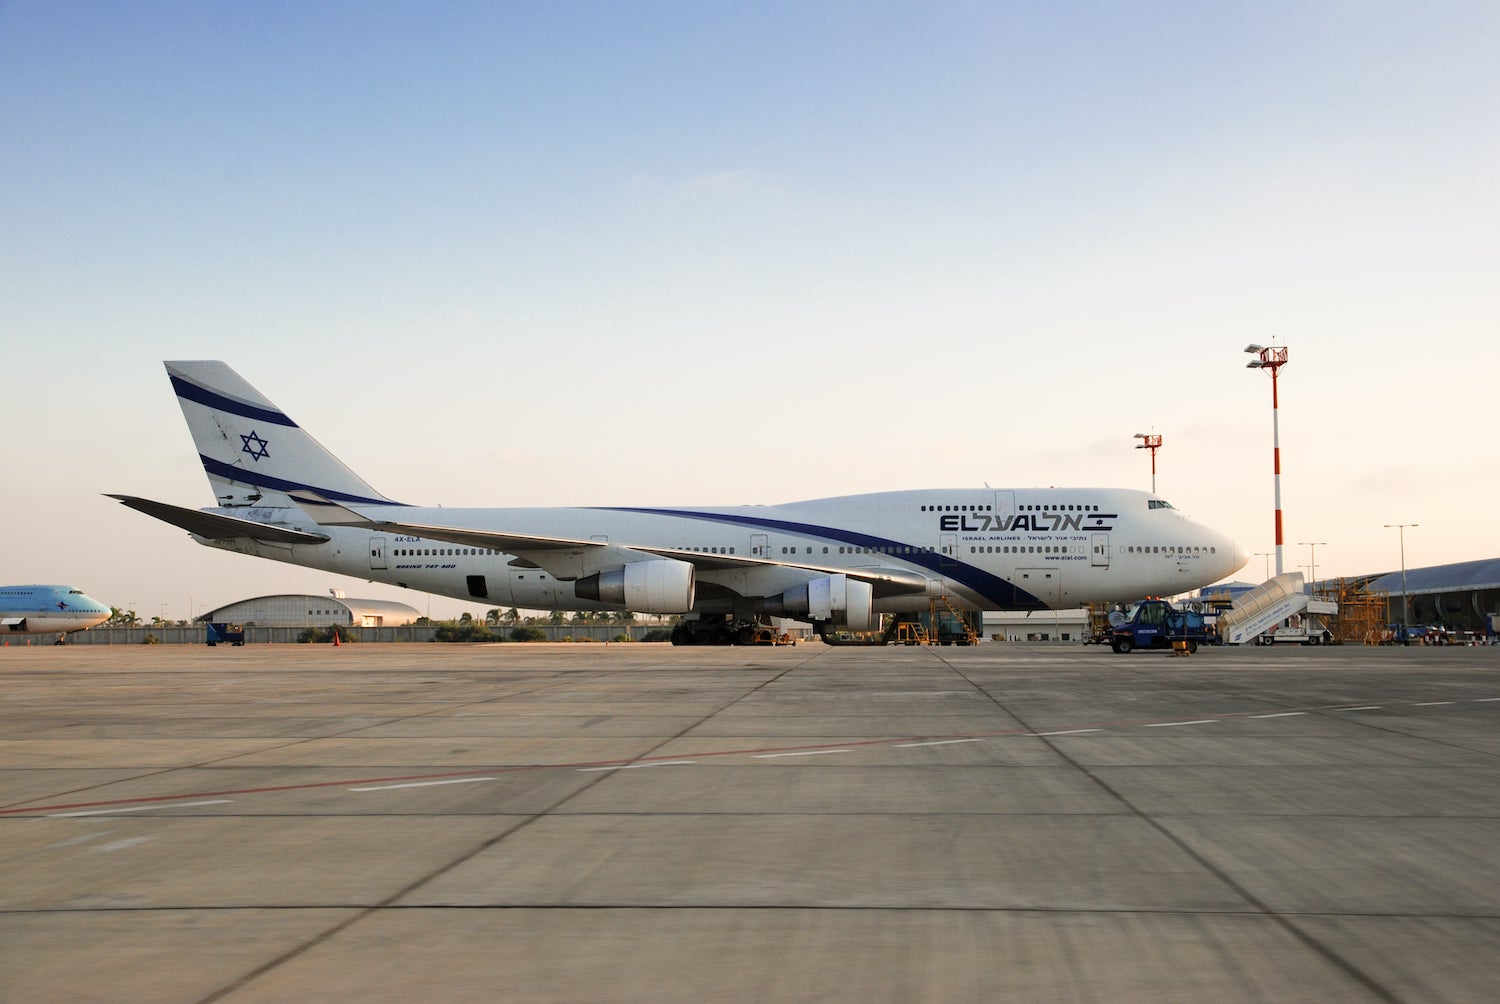 El Al 747 at TLV Airport